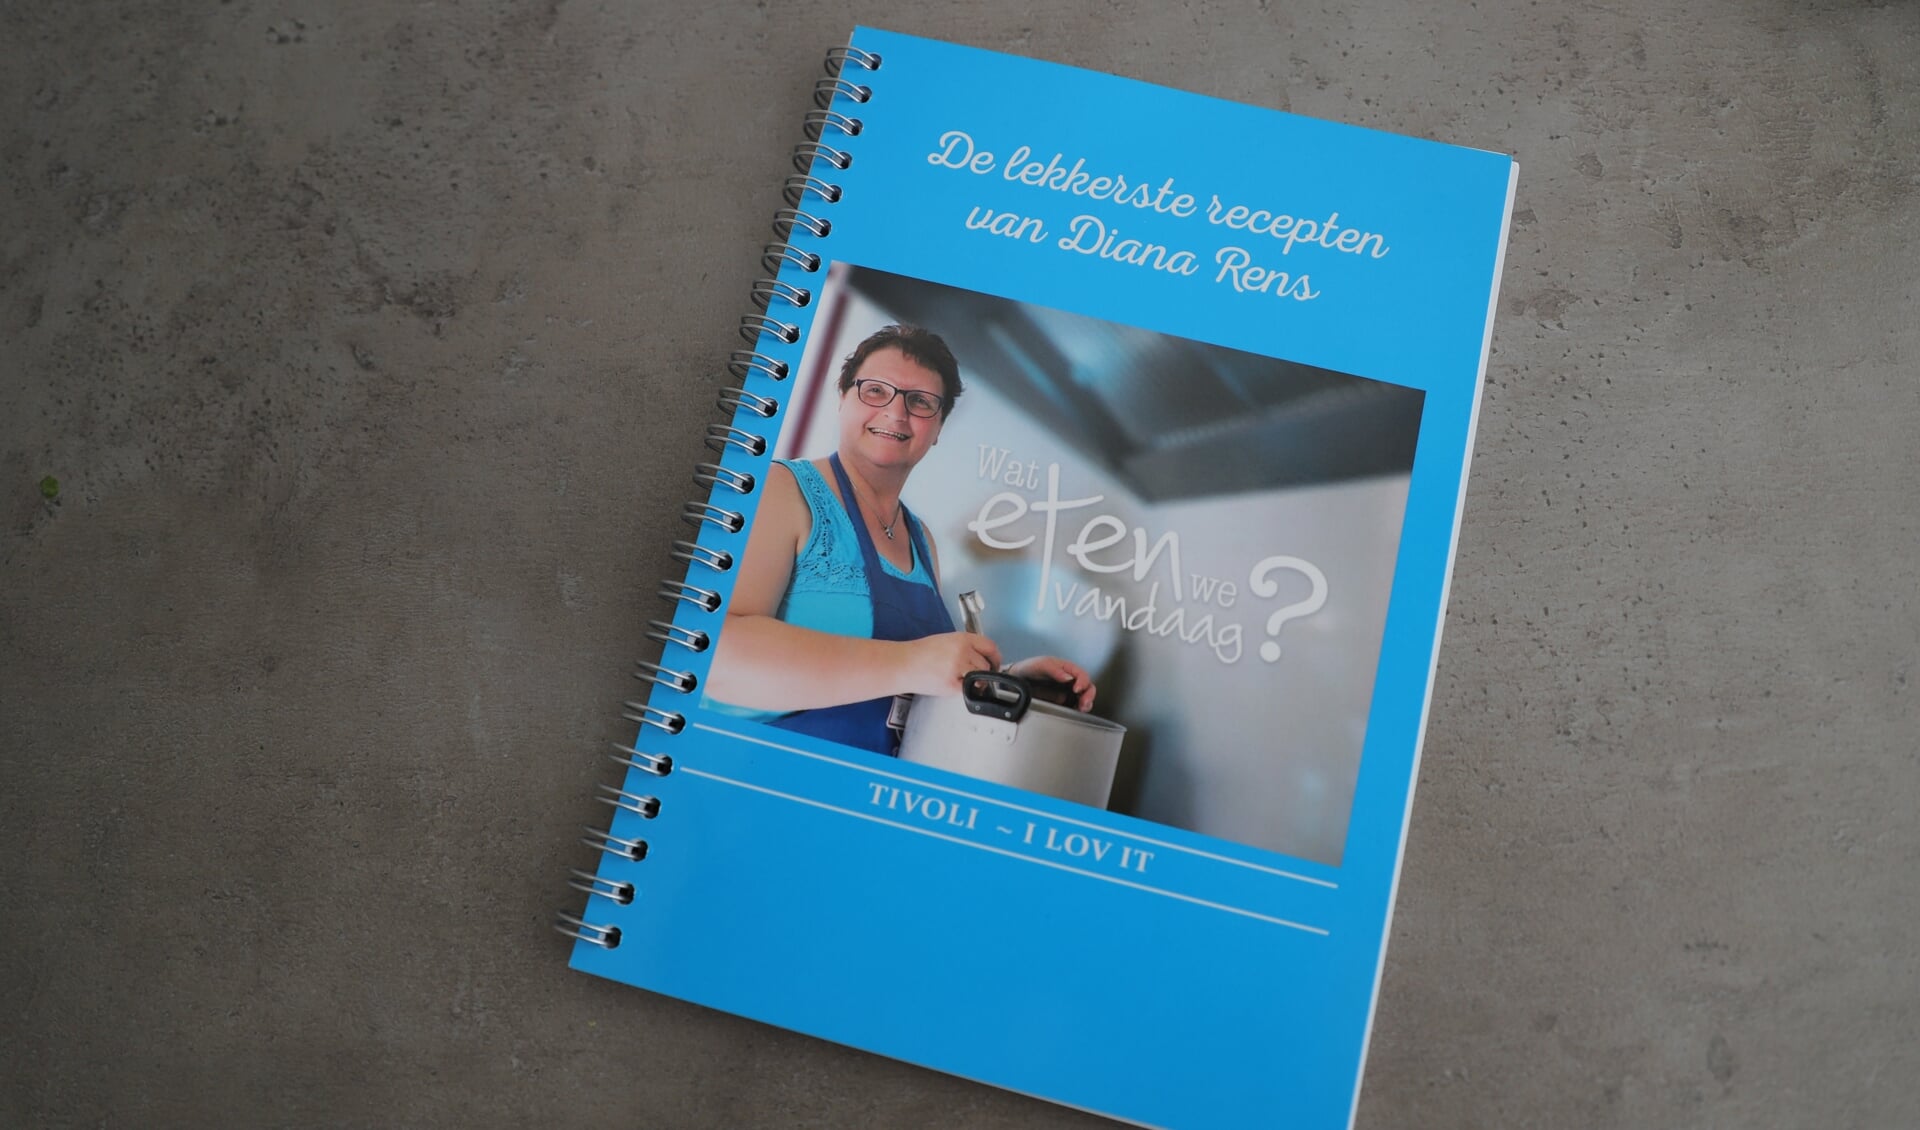 Er is ook een receptenboekje van Diana Rens verkrijgbaar.